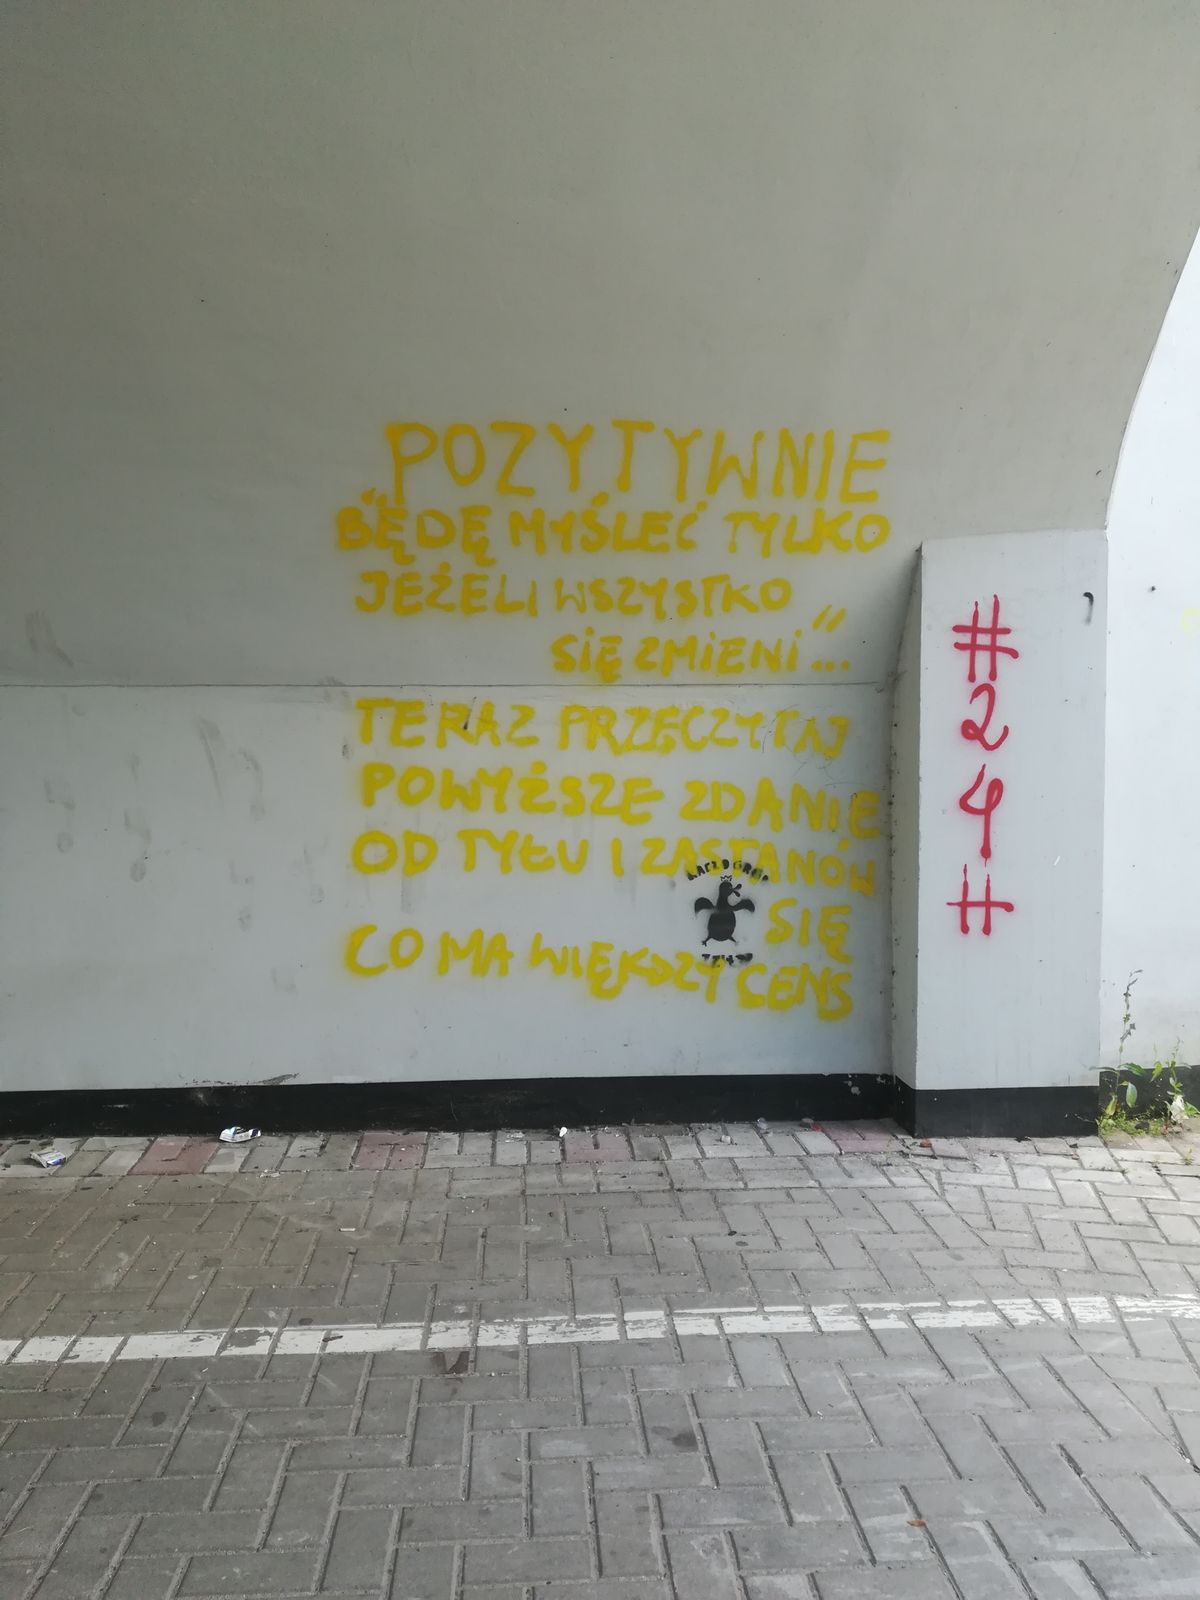 Przejście dla pieszych pod torami przy ulicy Grunwaldzkiej. Kto namalował ten napis? Dlaczego chciał zachęcić przechodniów do zastanowienia się nad pozytywnym myśleniem? 